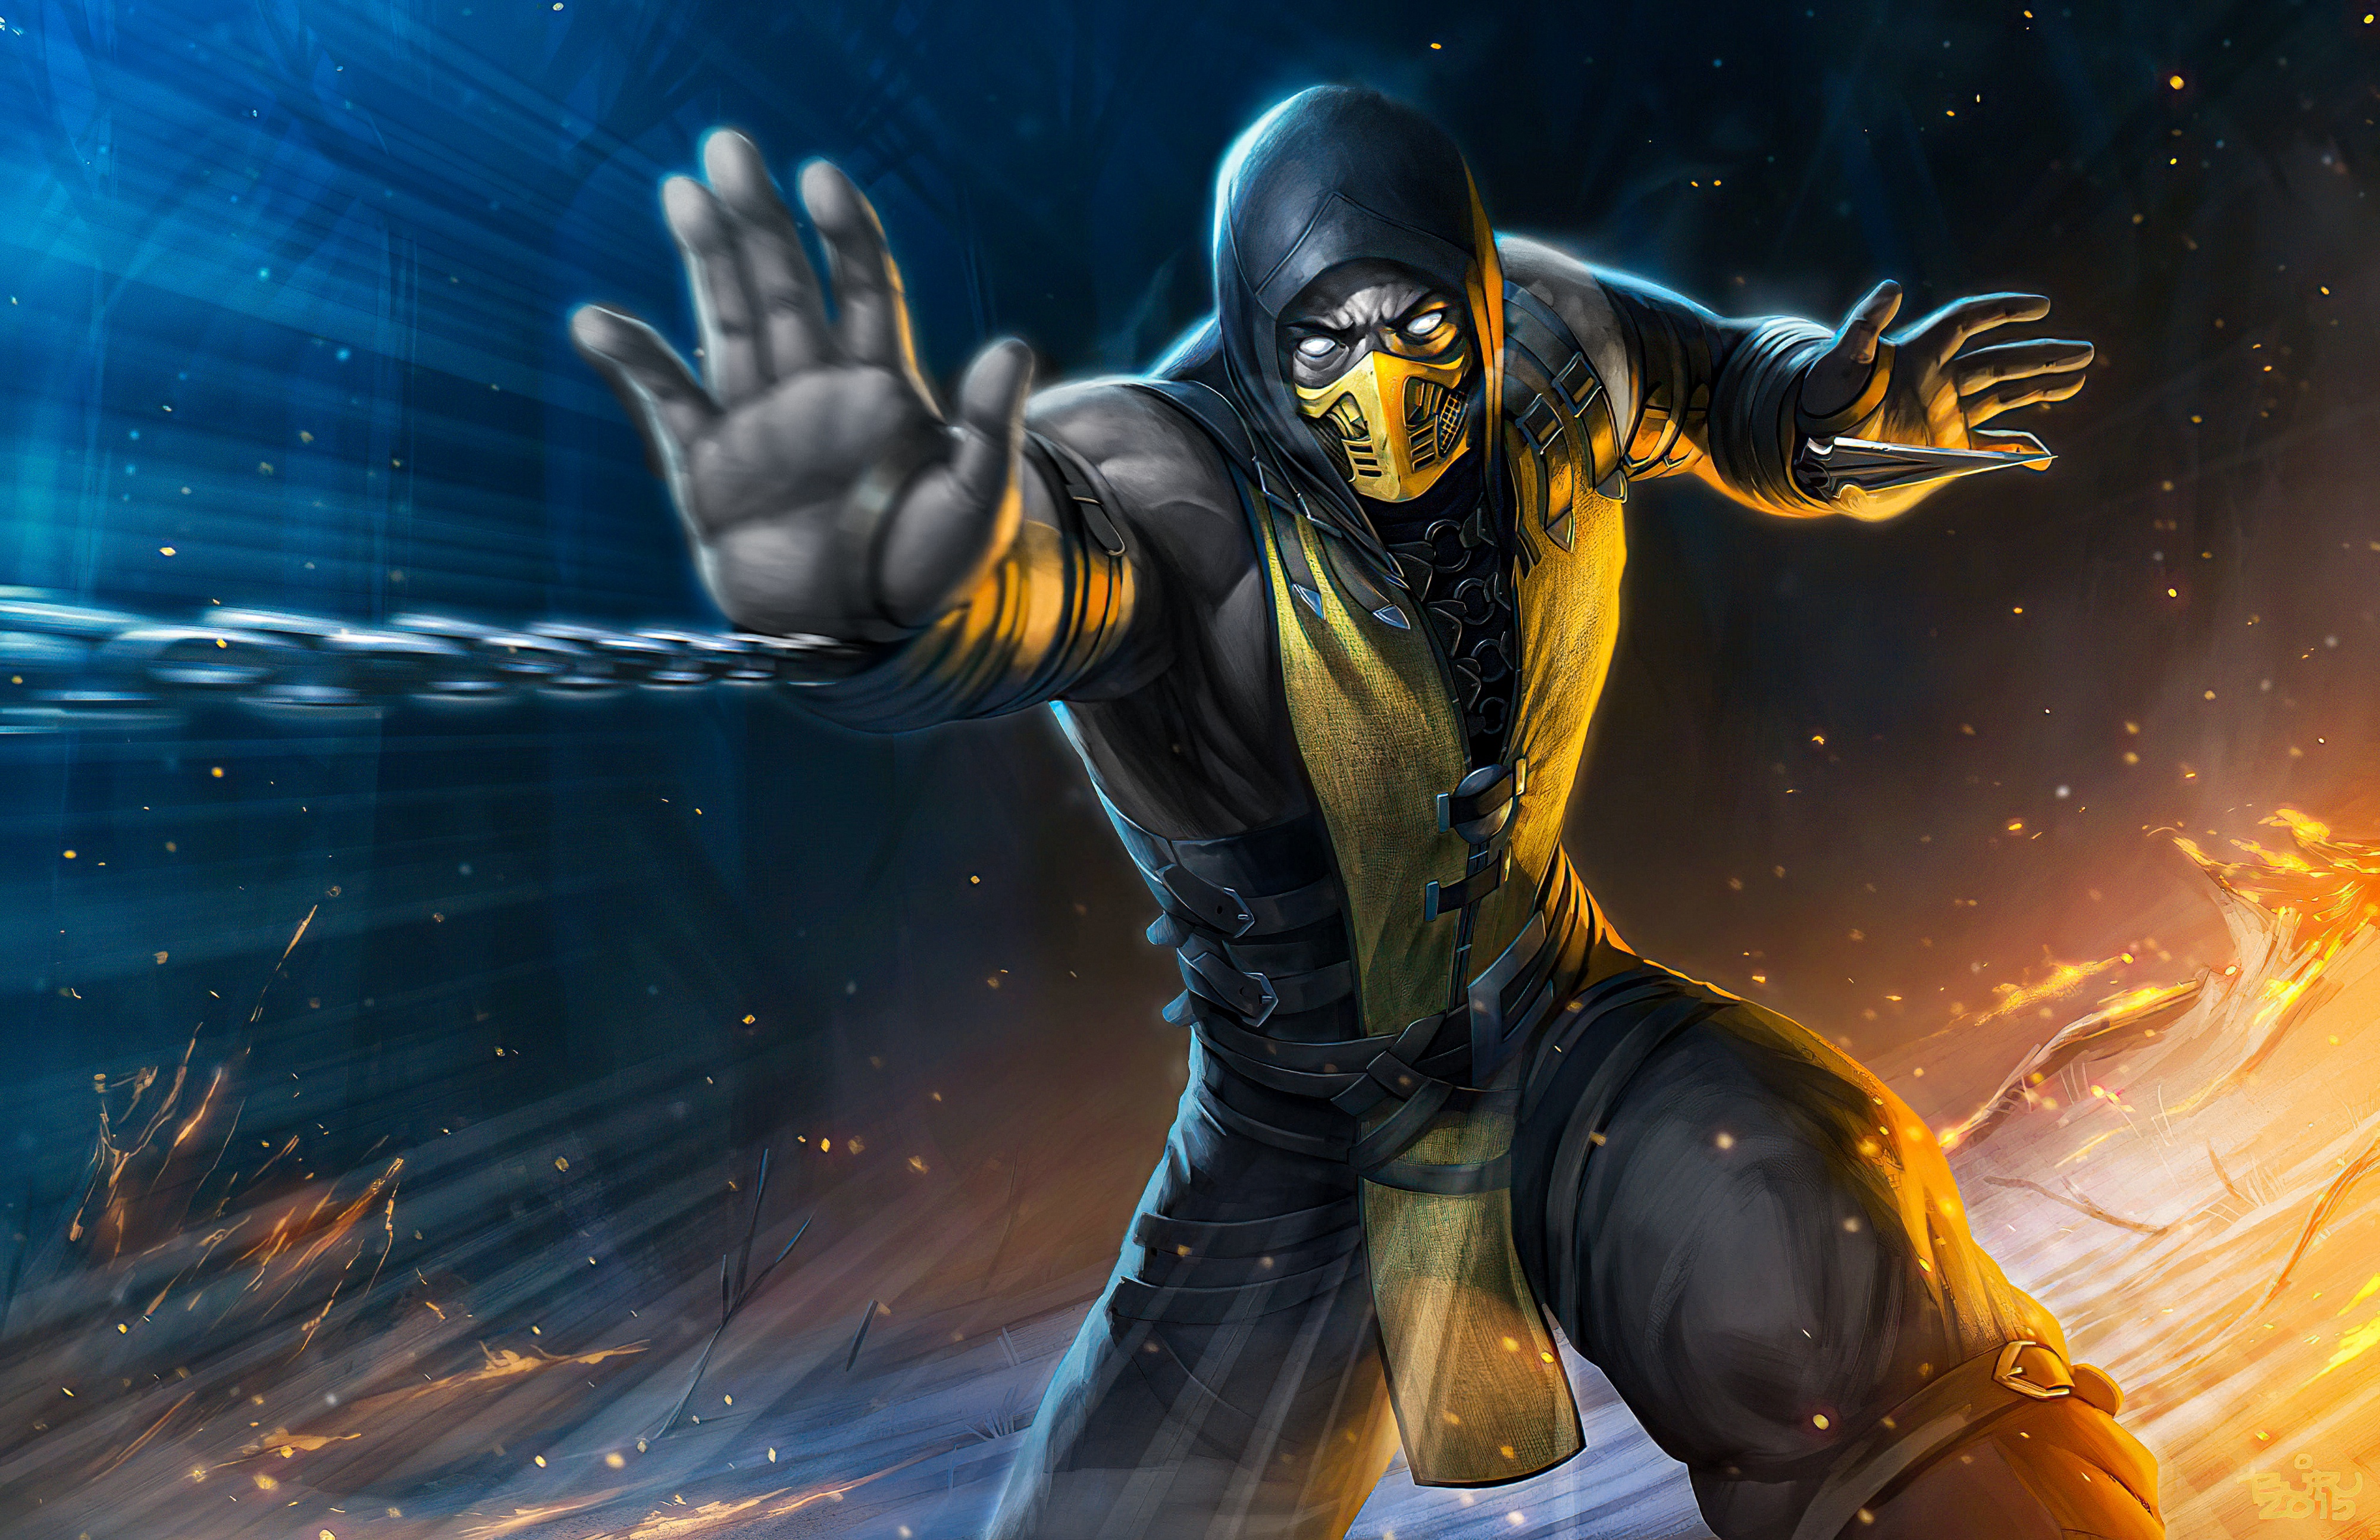 Character from Mortal Kombat Scorpion Wallpaper 4k HD ID:4339